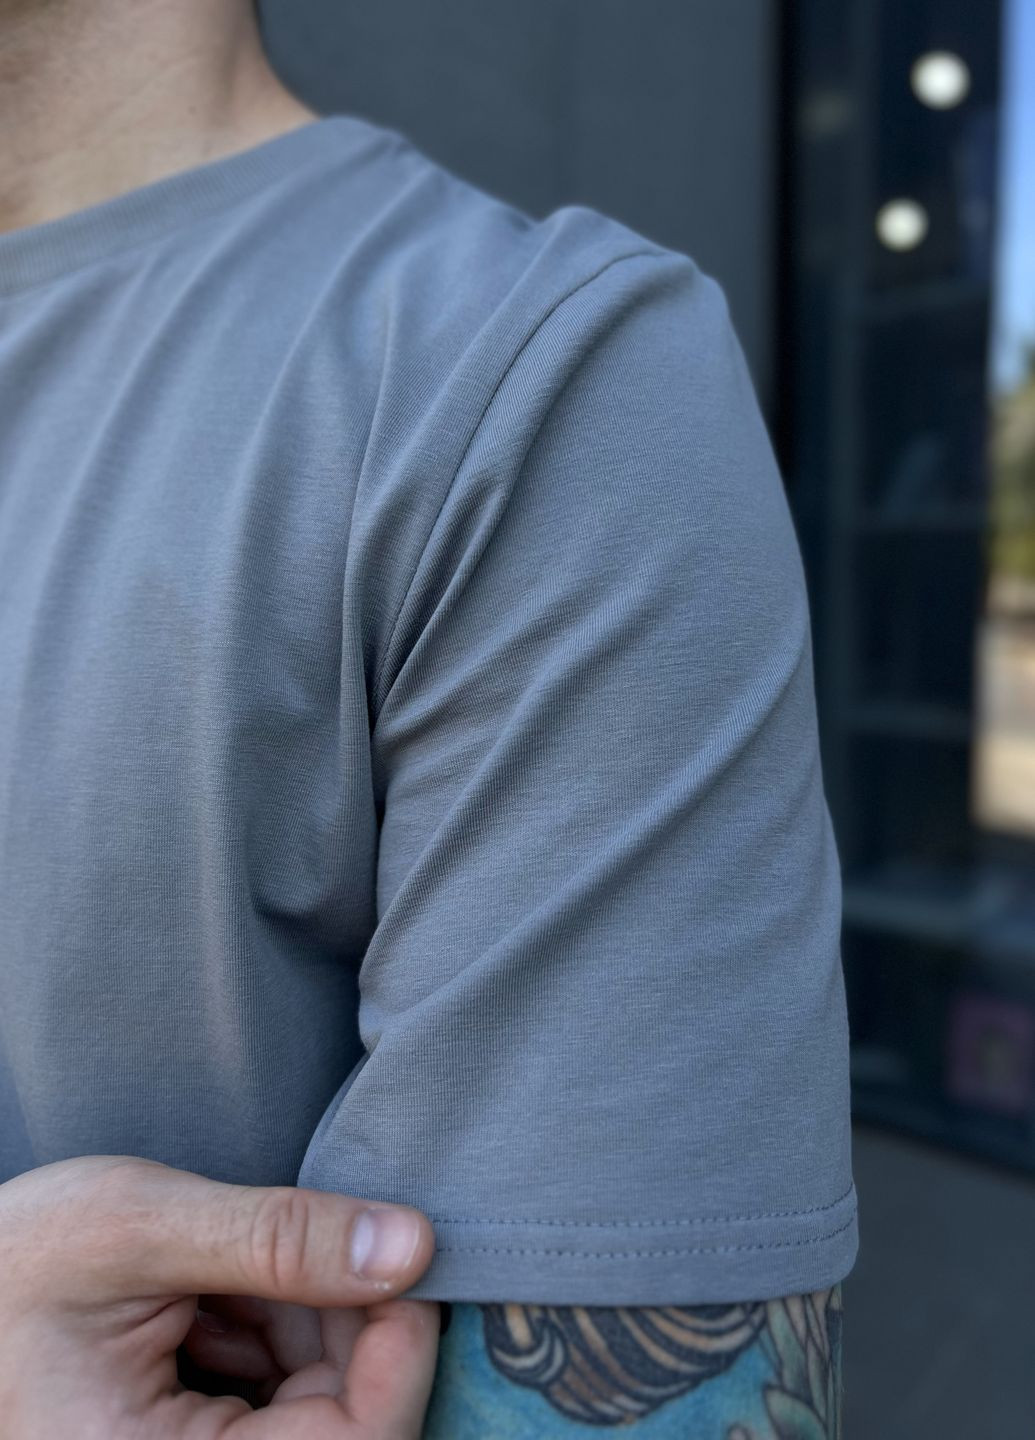 Чоловічий літній костюм Volition комплект шорти+футболка сірий Cosy (260012104)